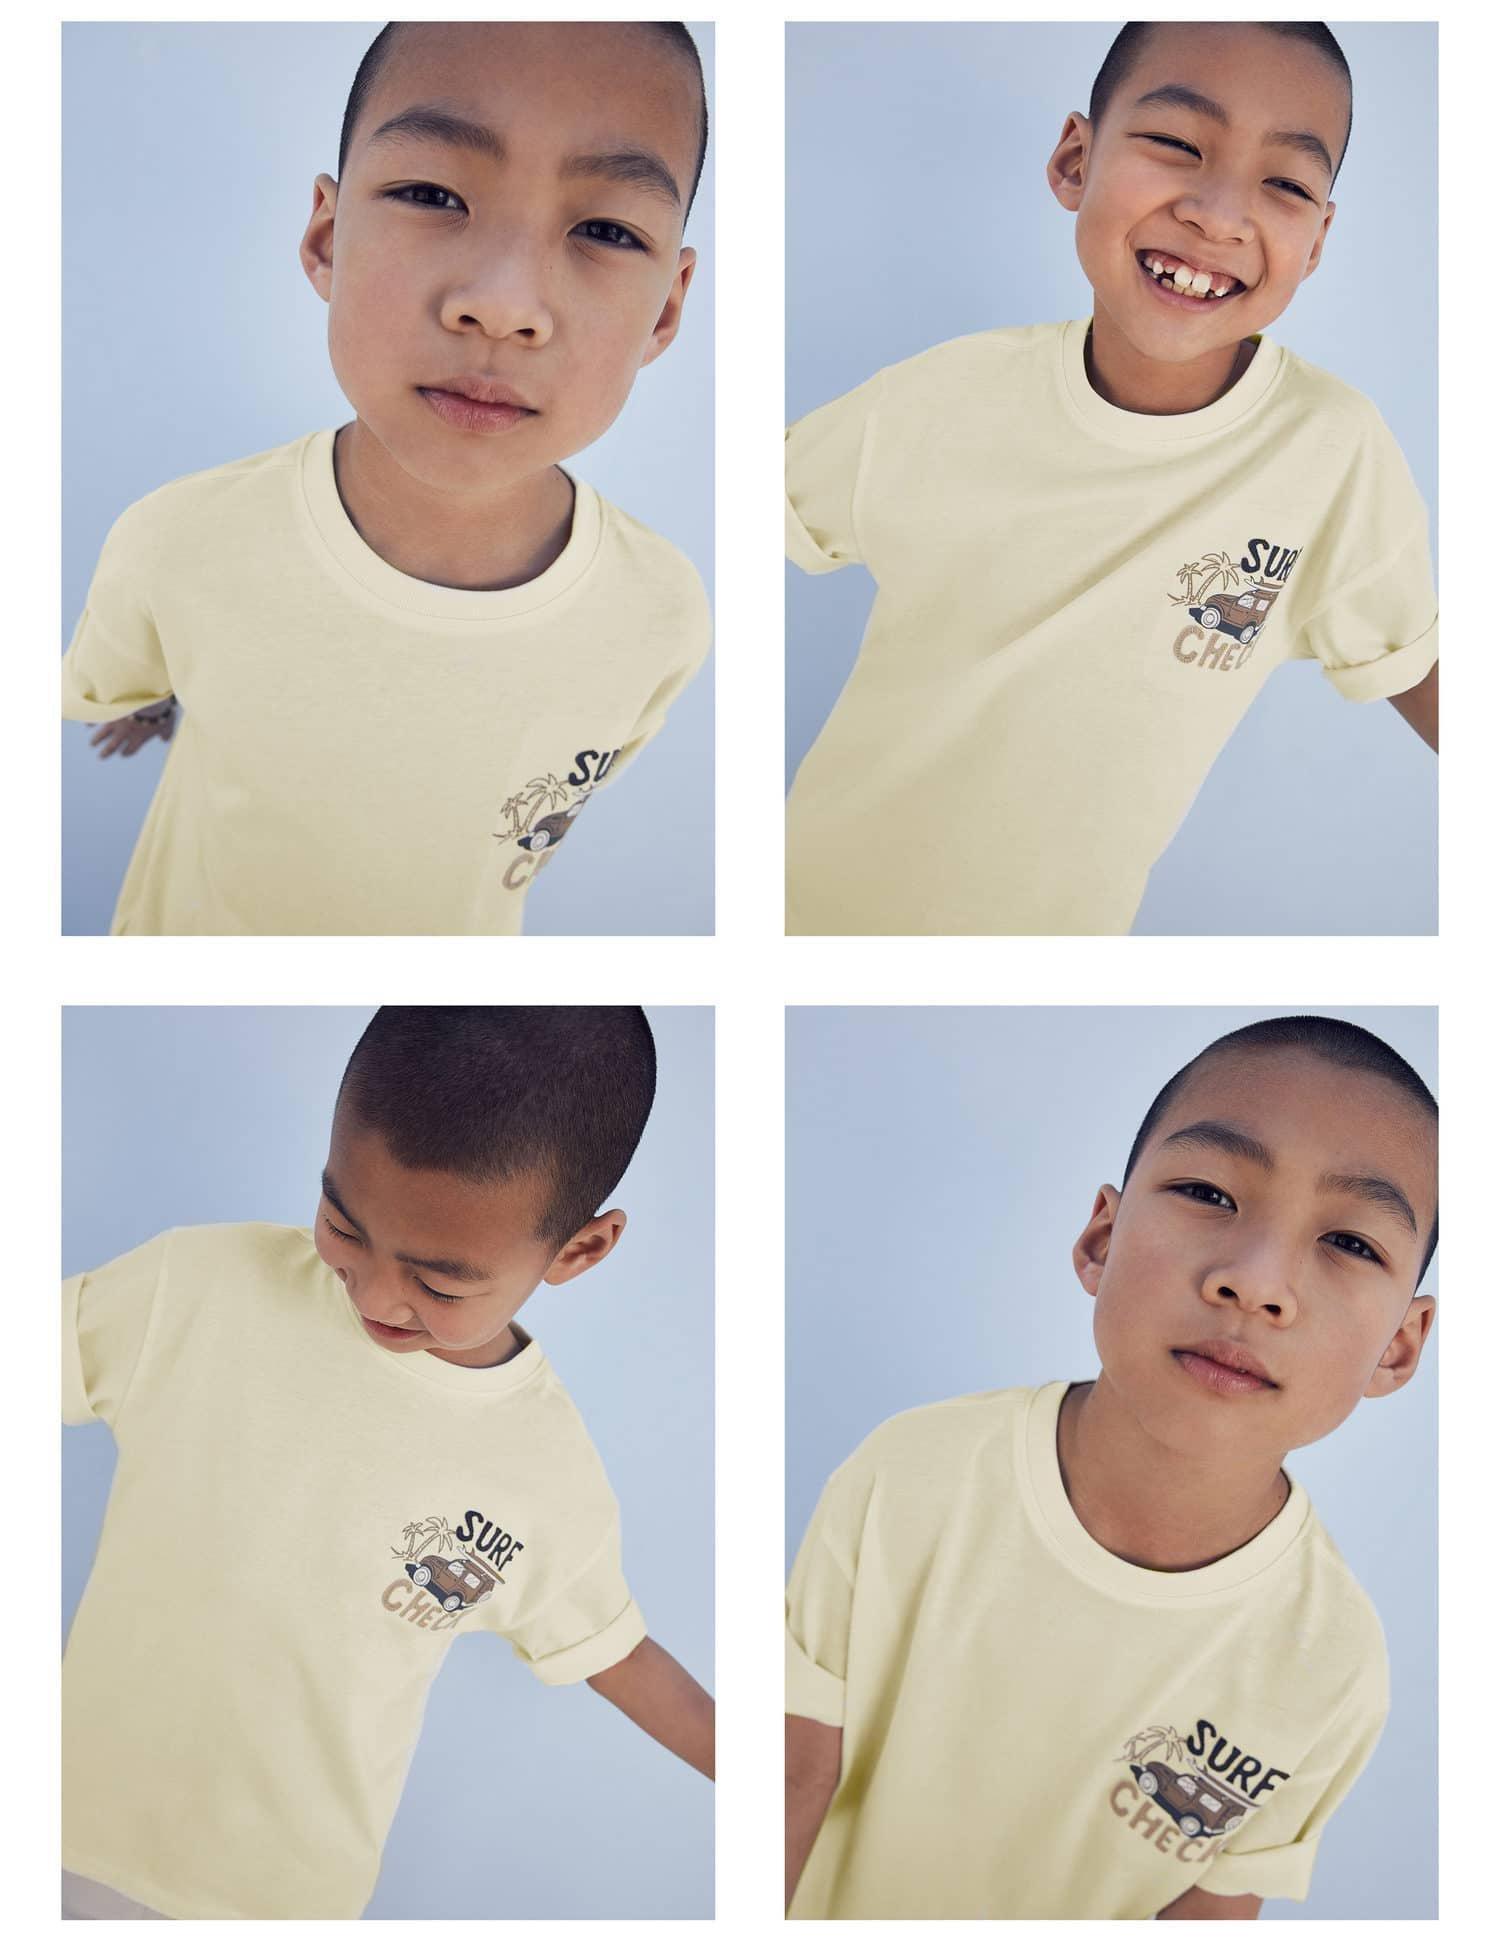 Mango - Yellow Textured Message T-Shirt, Kids Boys